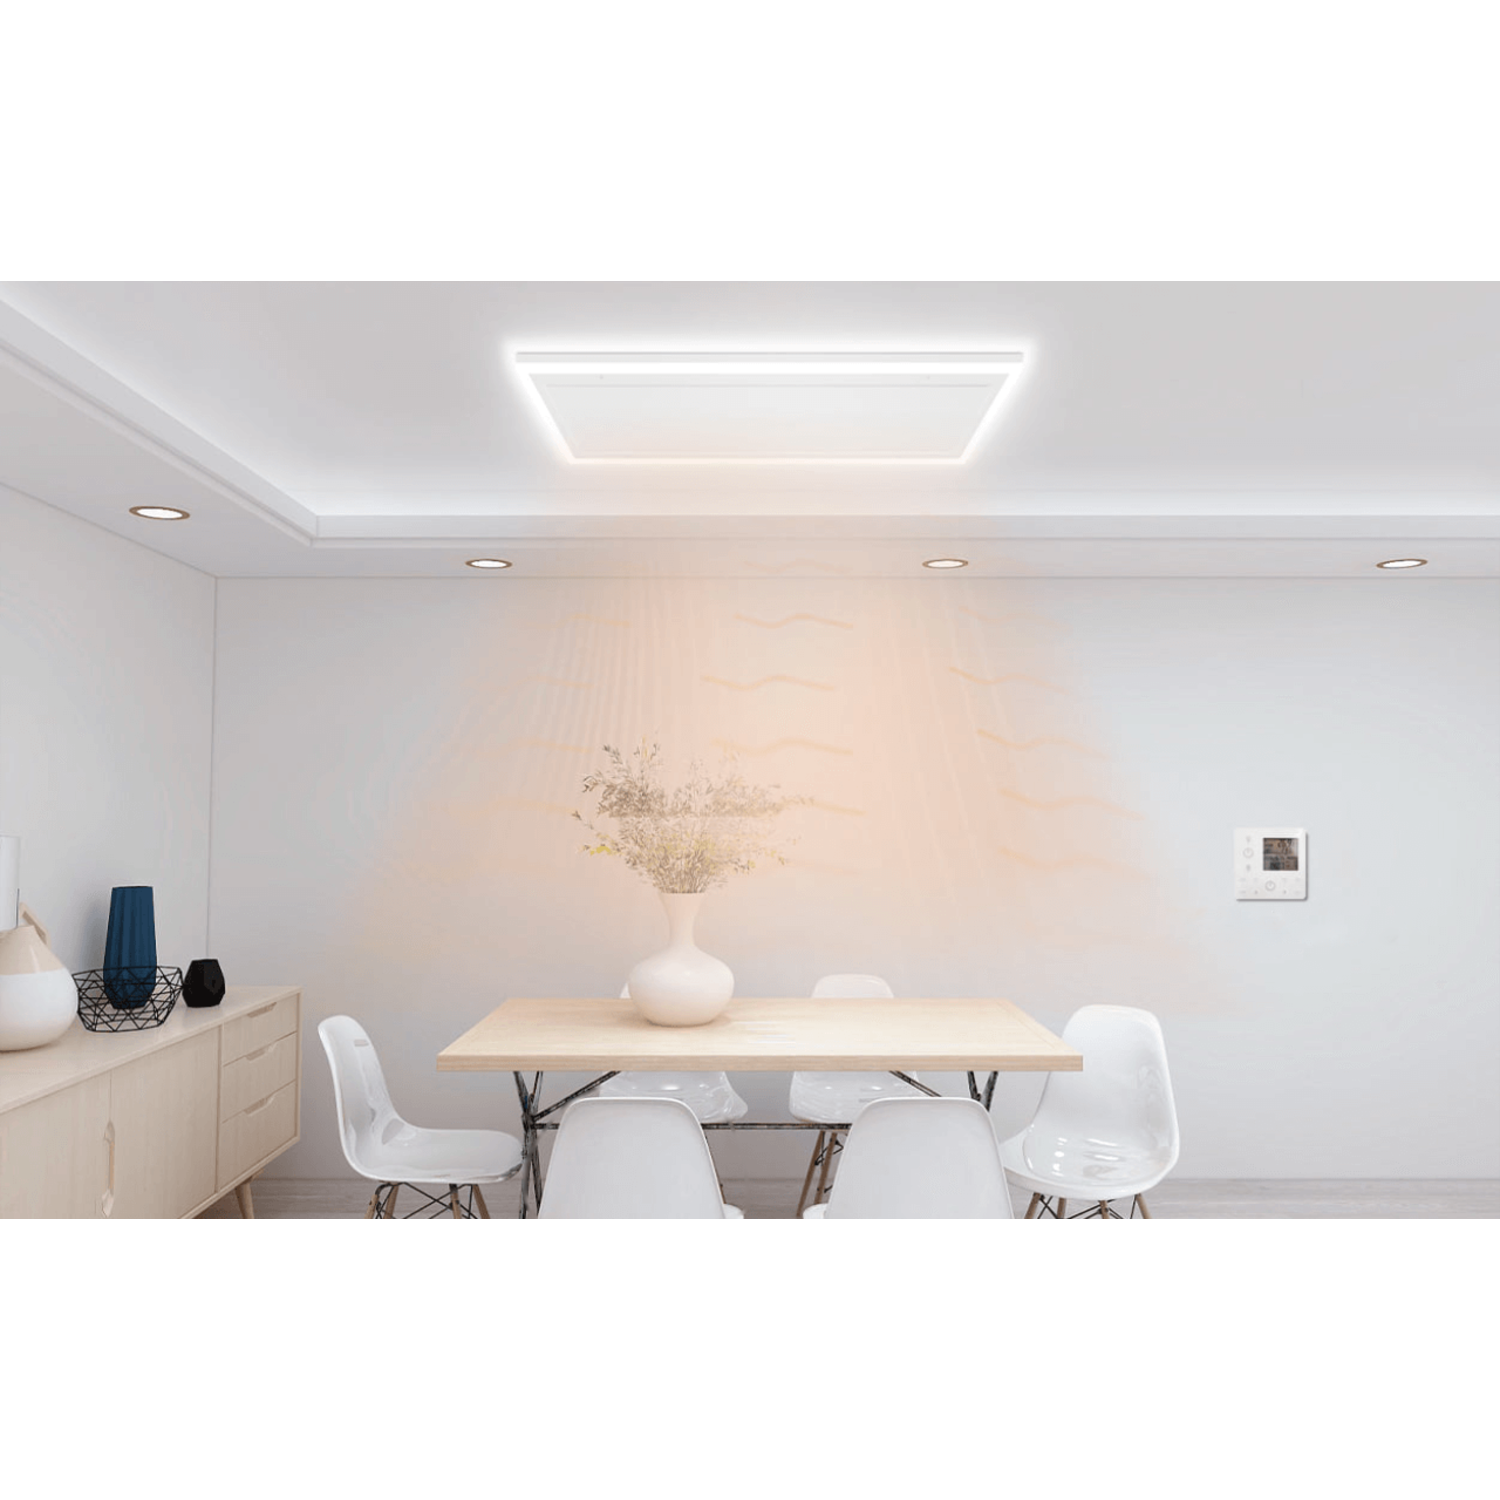 Charles Keasing Schaken Uitsluiting Infrarood paneel met LED verlichting voor plafond (840W) - Verwarminghandel